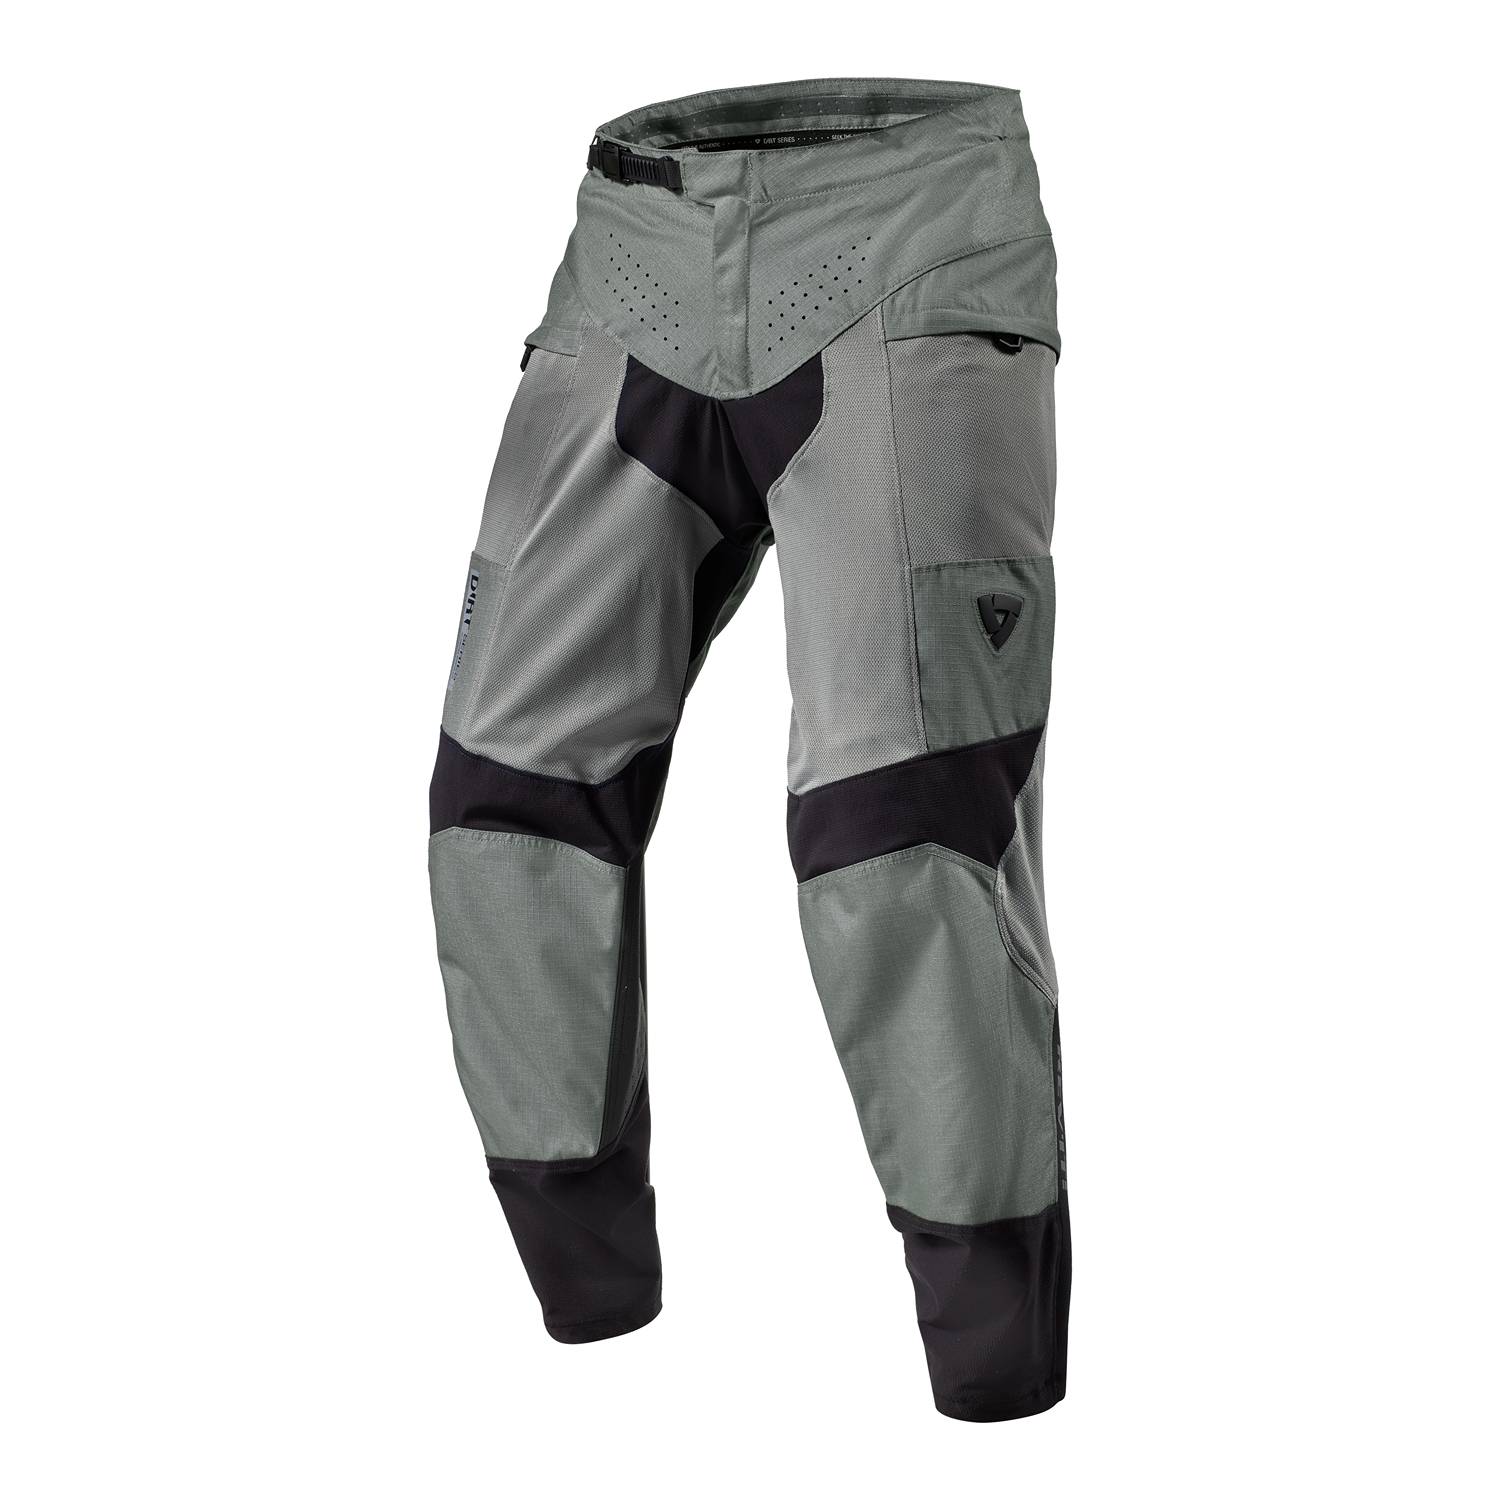 Image of REV'IT! Pants Territory Mid Grey Long Motorcycle Pants Size M EN